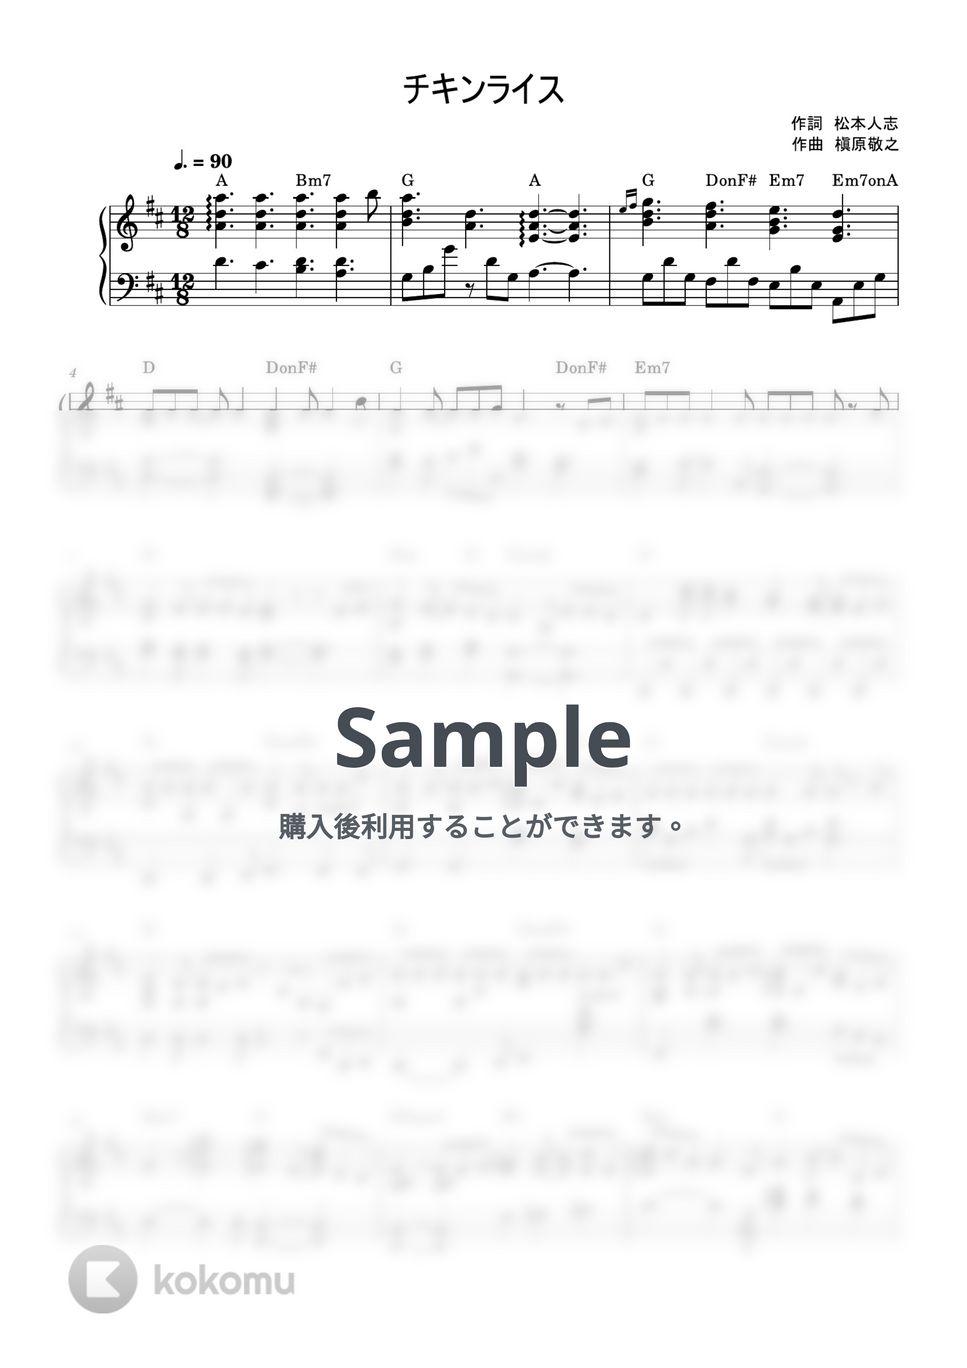 槇原敬之 - チキンライス (ピアノソロ) by MIKA